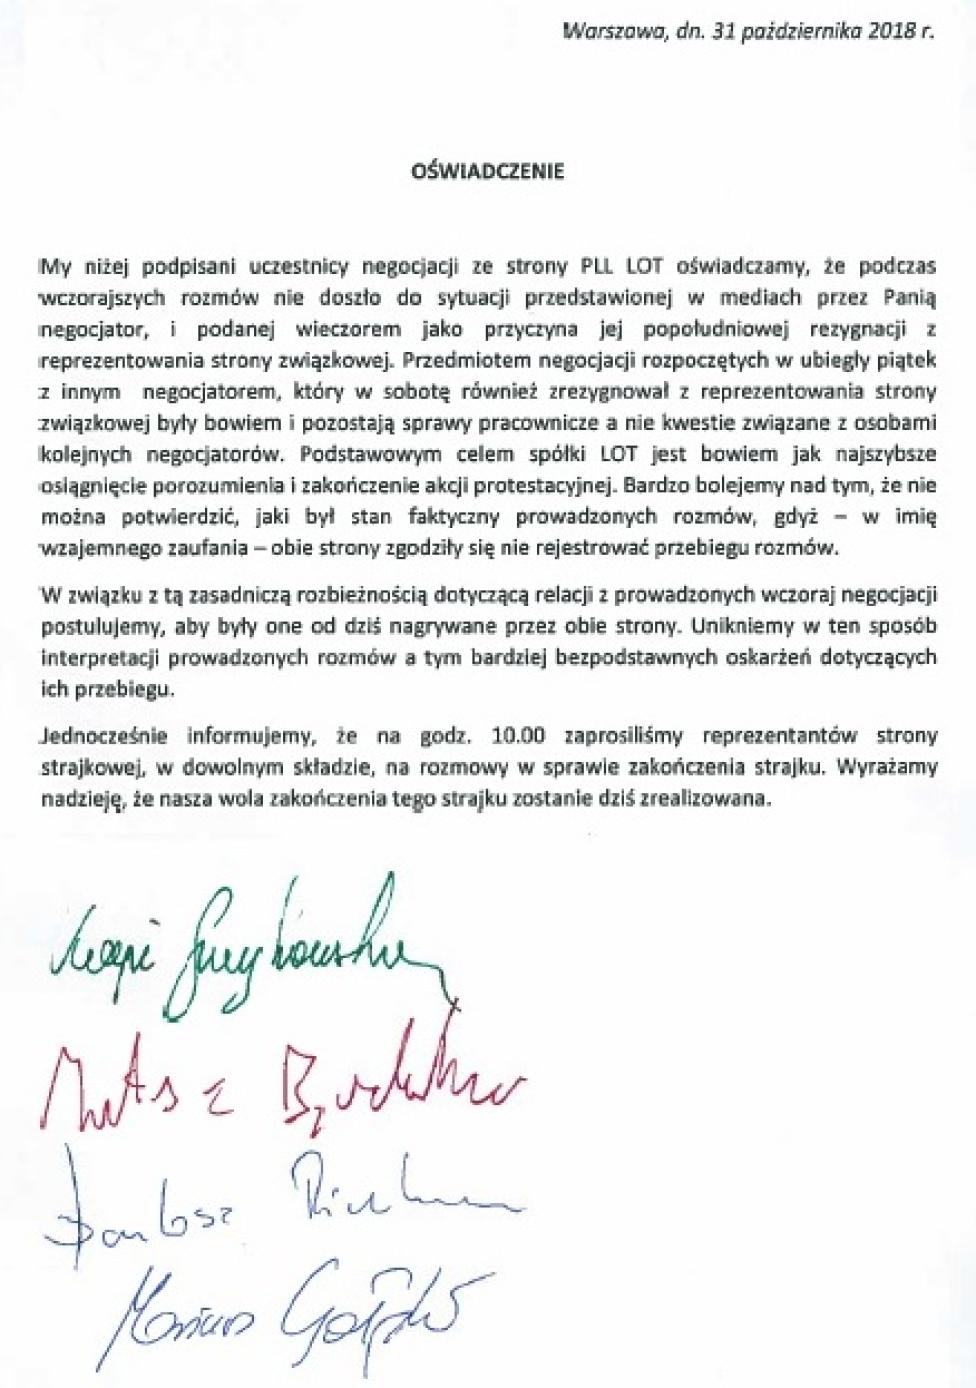 Oświadczenie PLL LOT dot. informacji o przyczynach rezygnacji negocjatora z reprezentowania strony związkowej